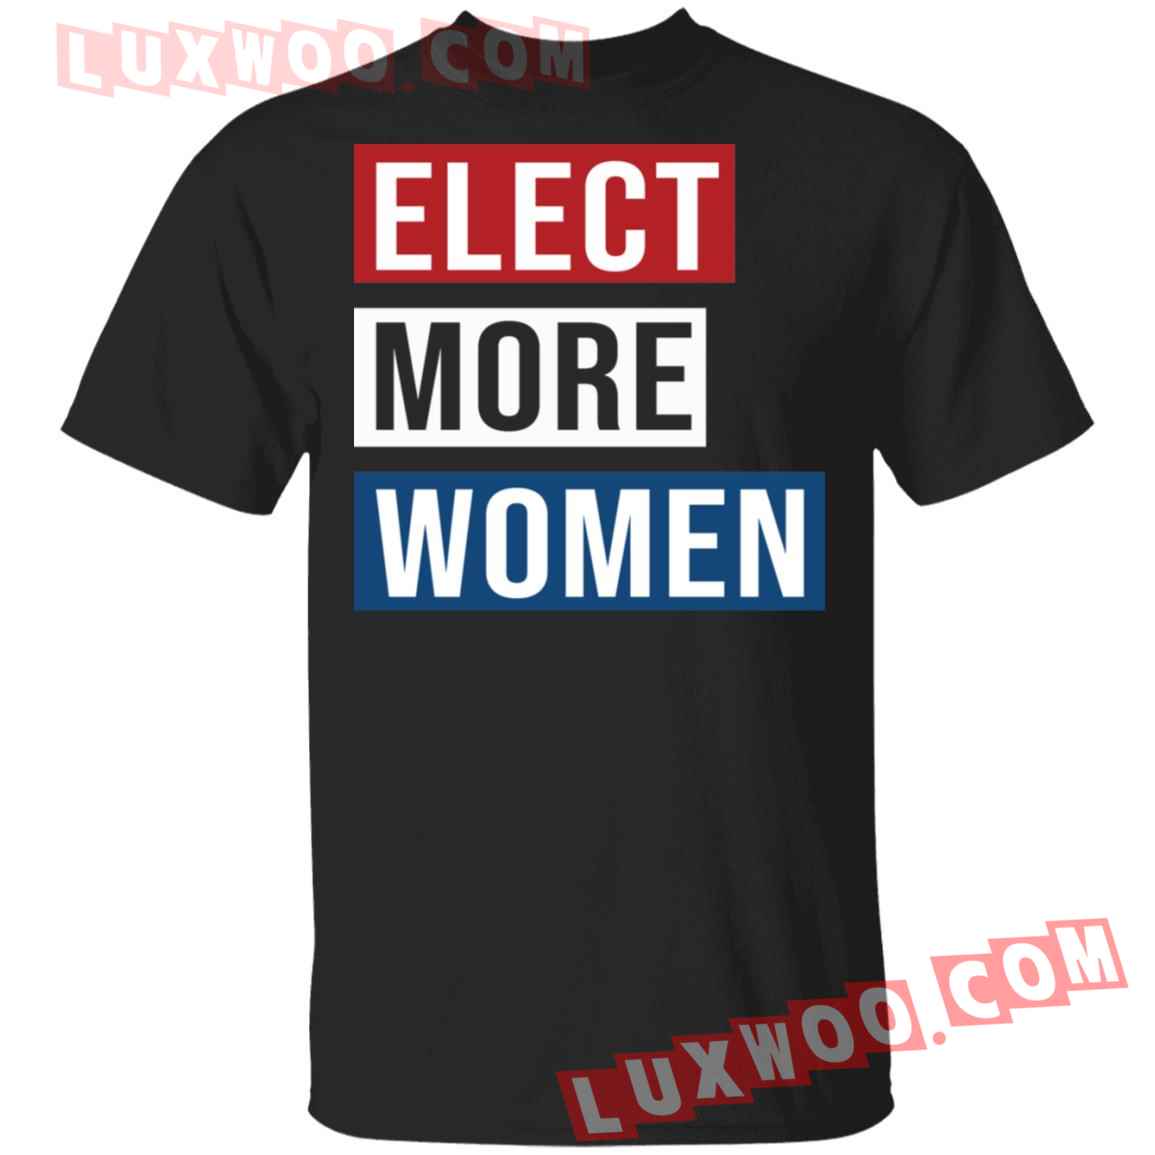 Elect More Women Shirt